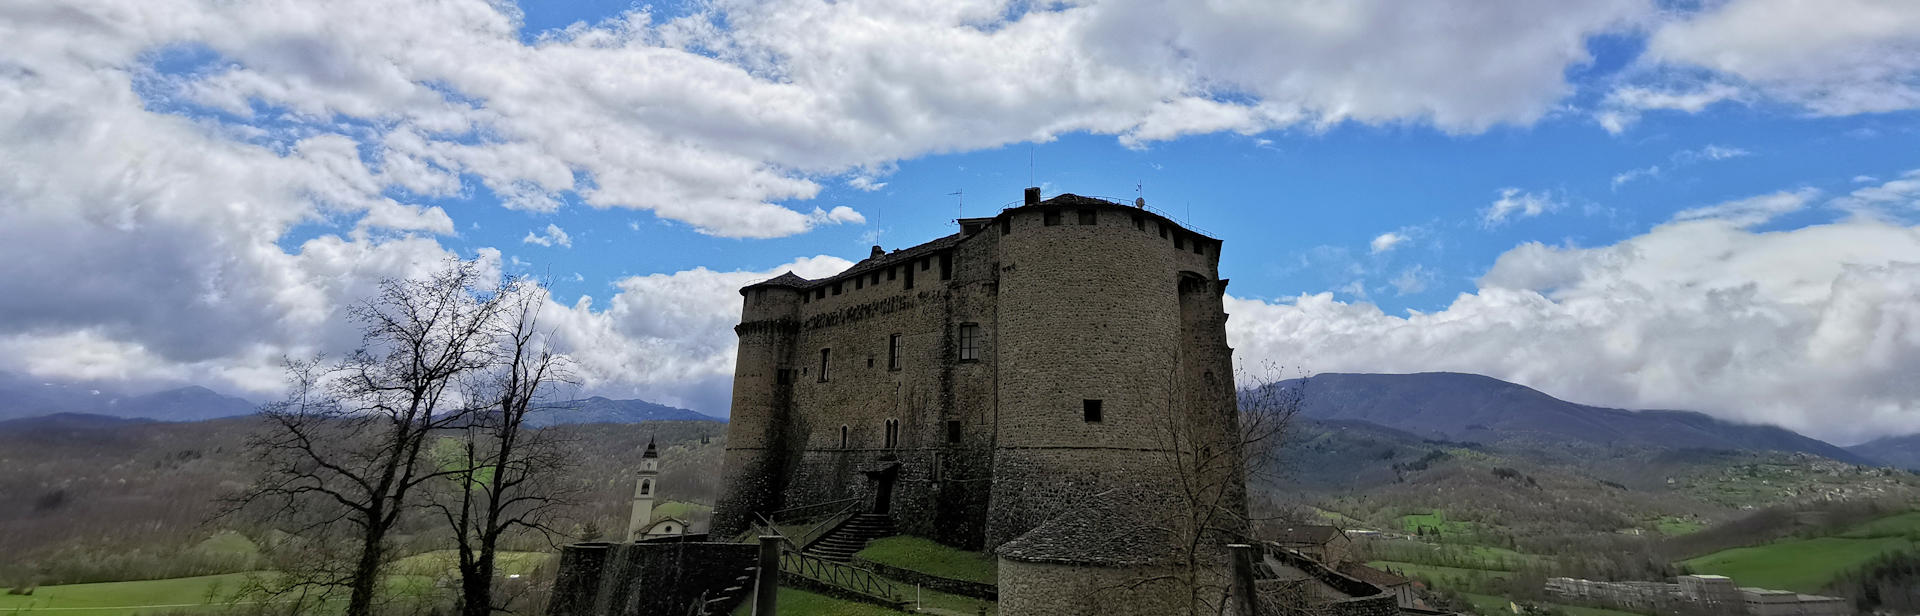 Castello di Compiano - Emilia Romagna